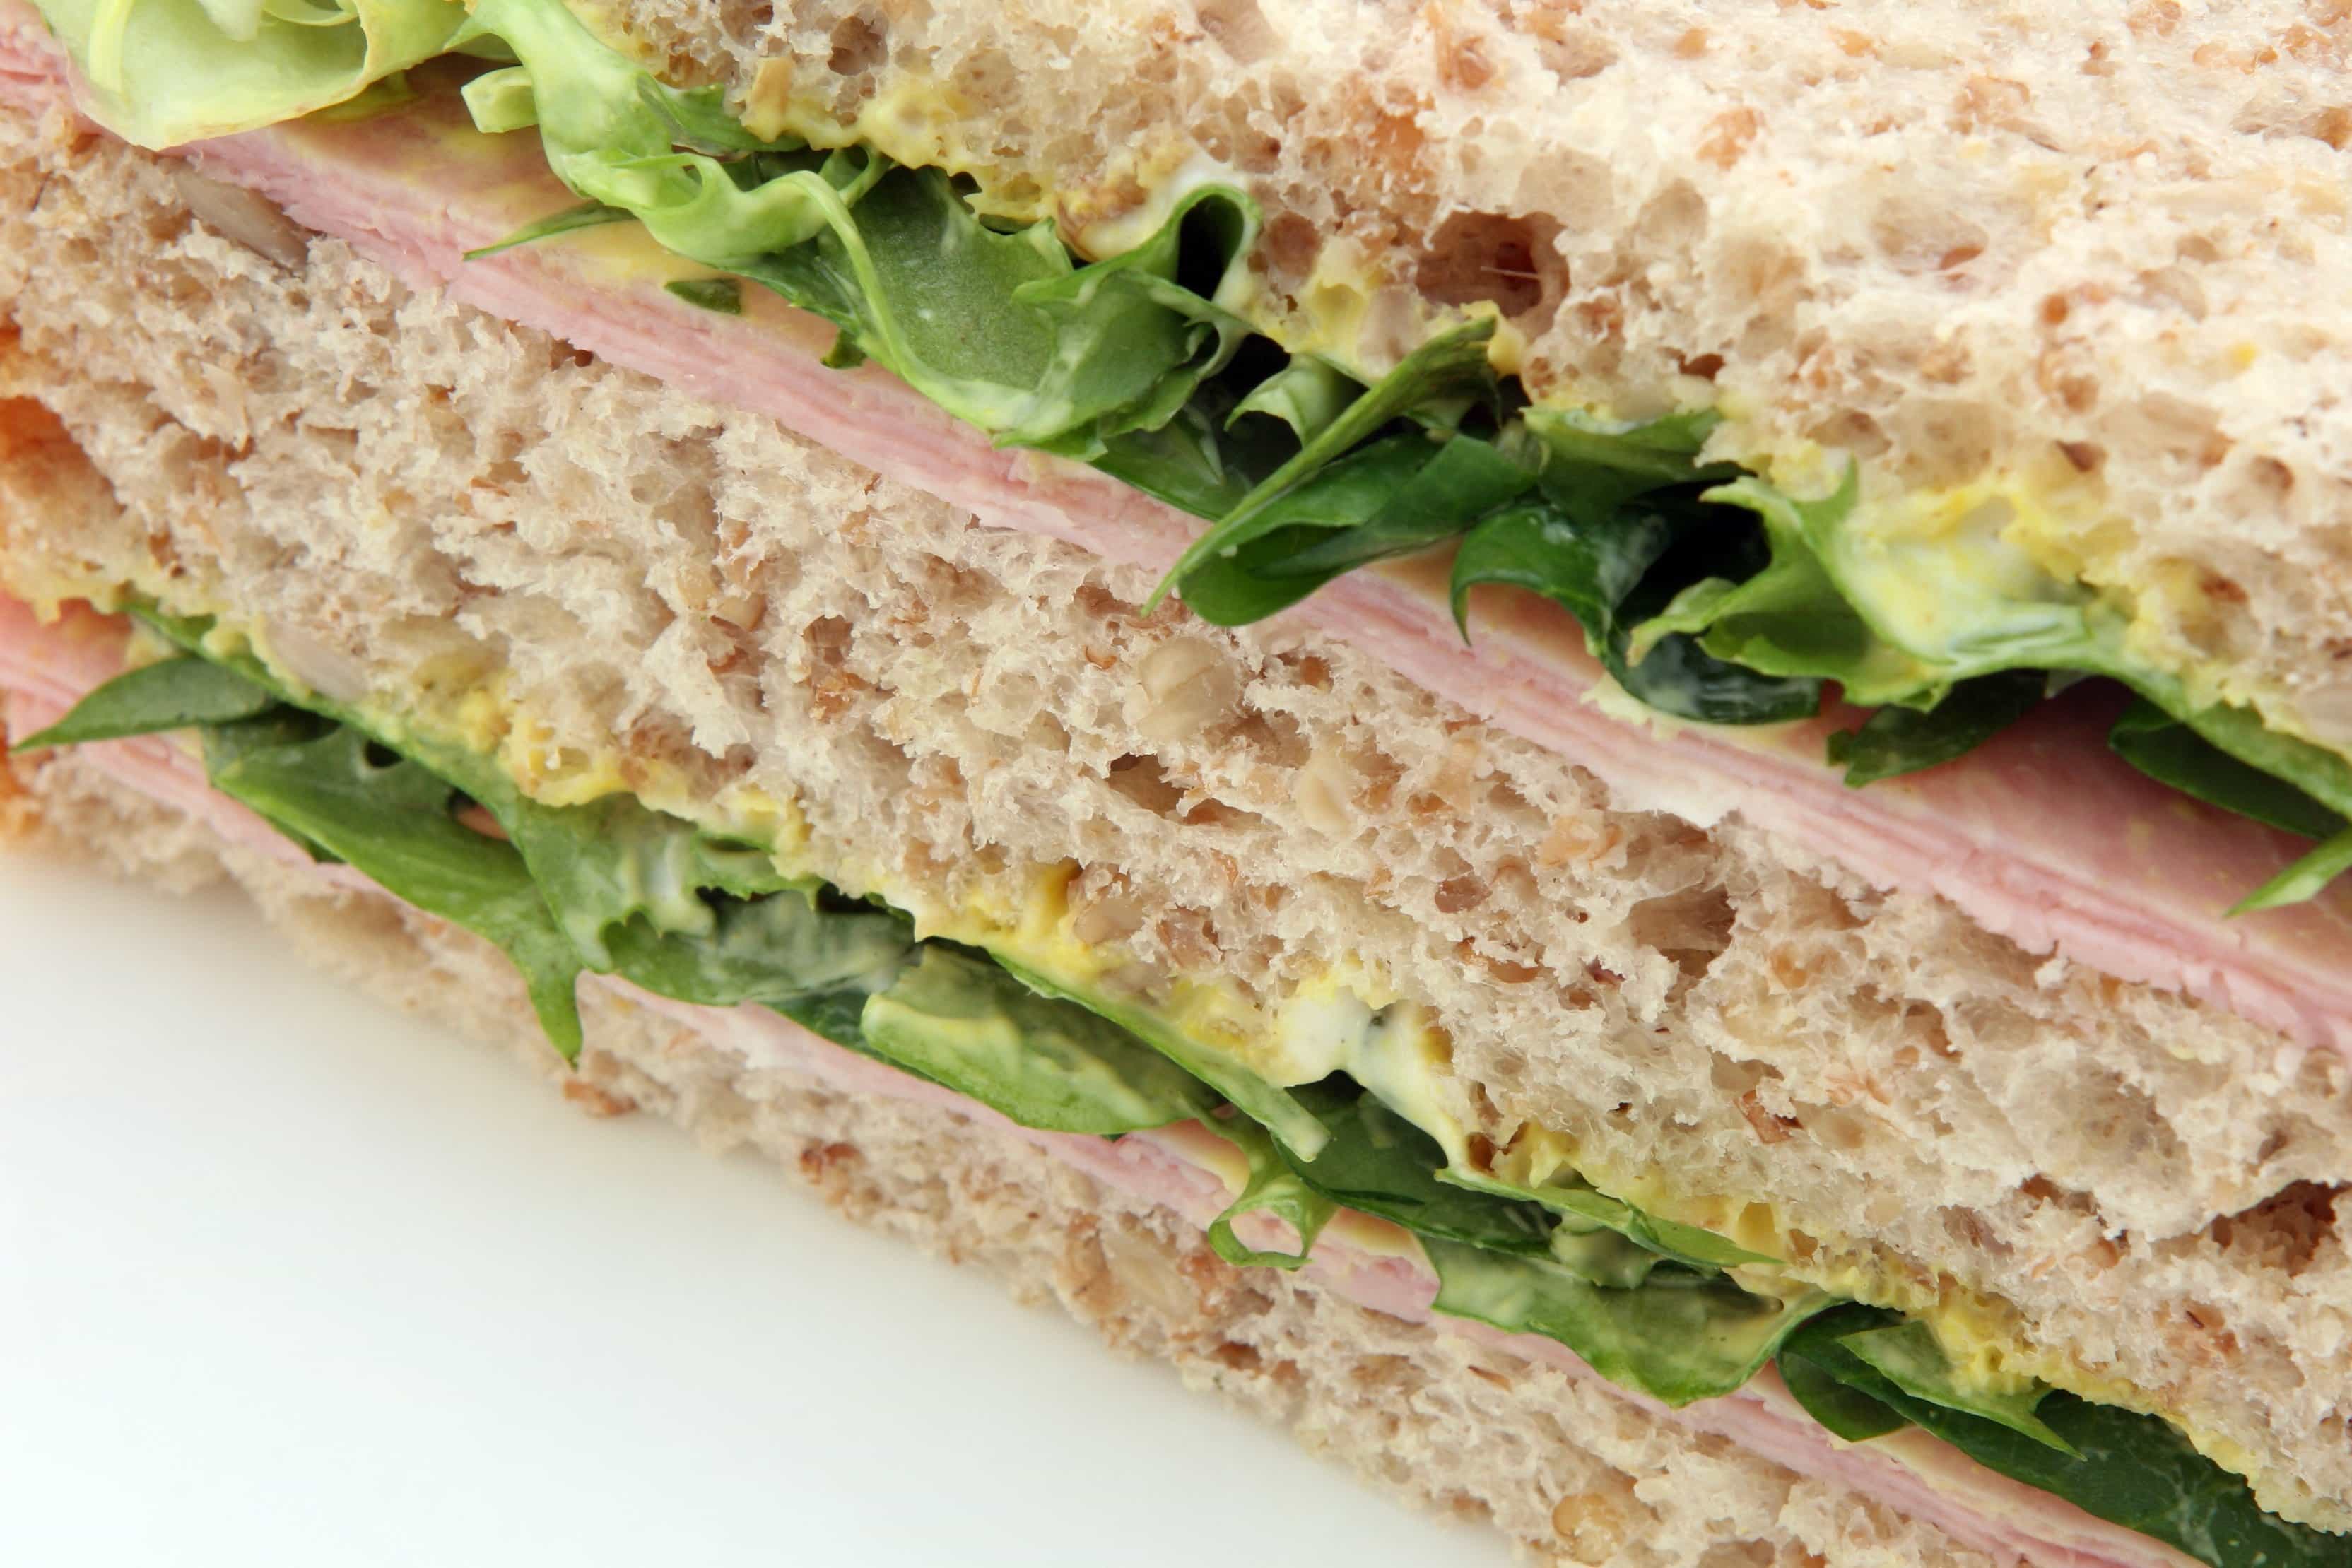 Kostenlose Bild: Salat, Sandwich, Frühstück, Schinken, Mittagessen, Essen